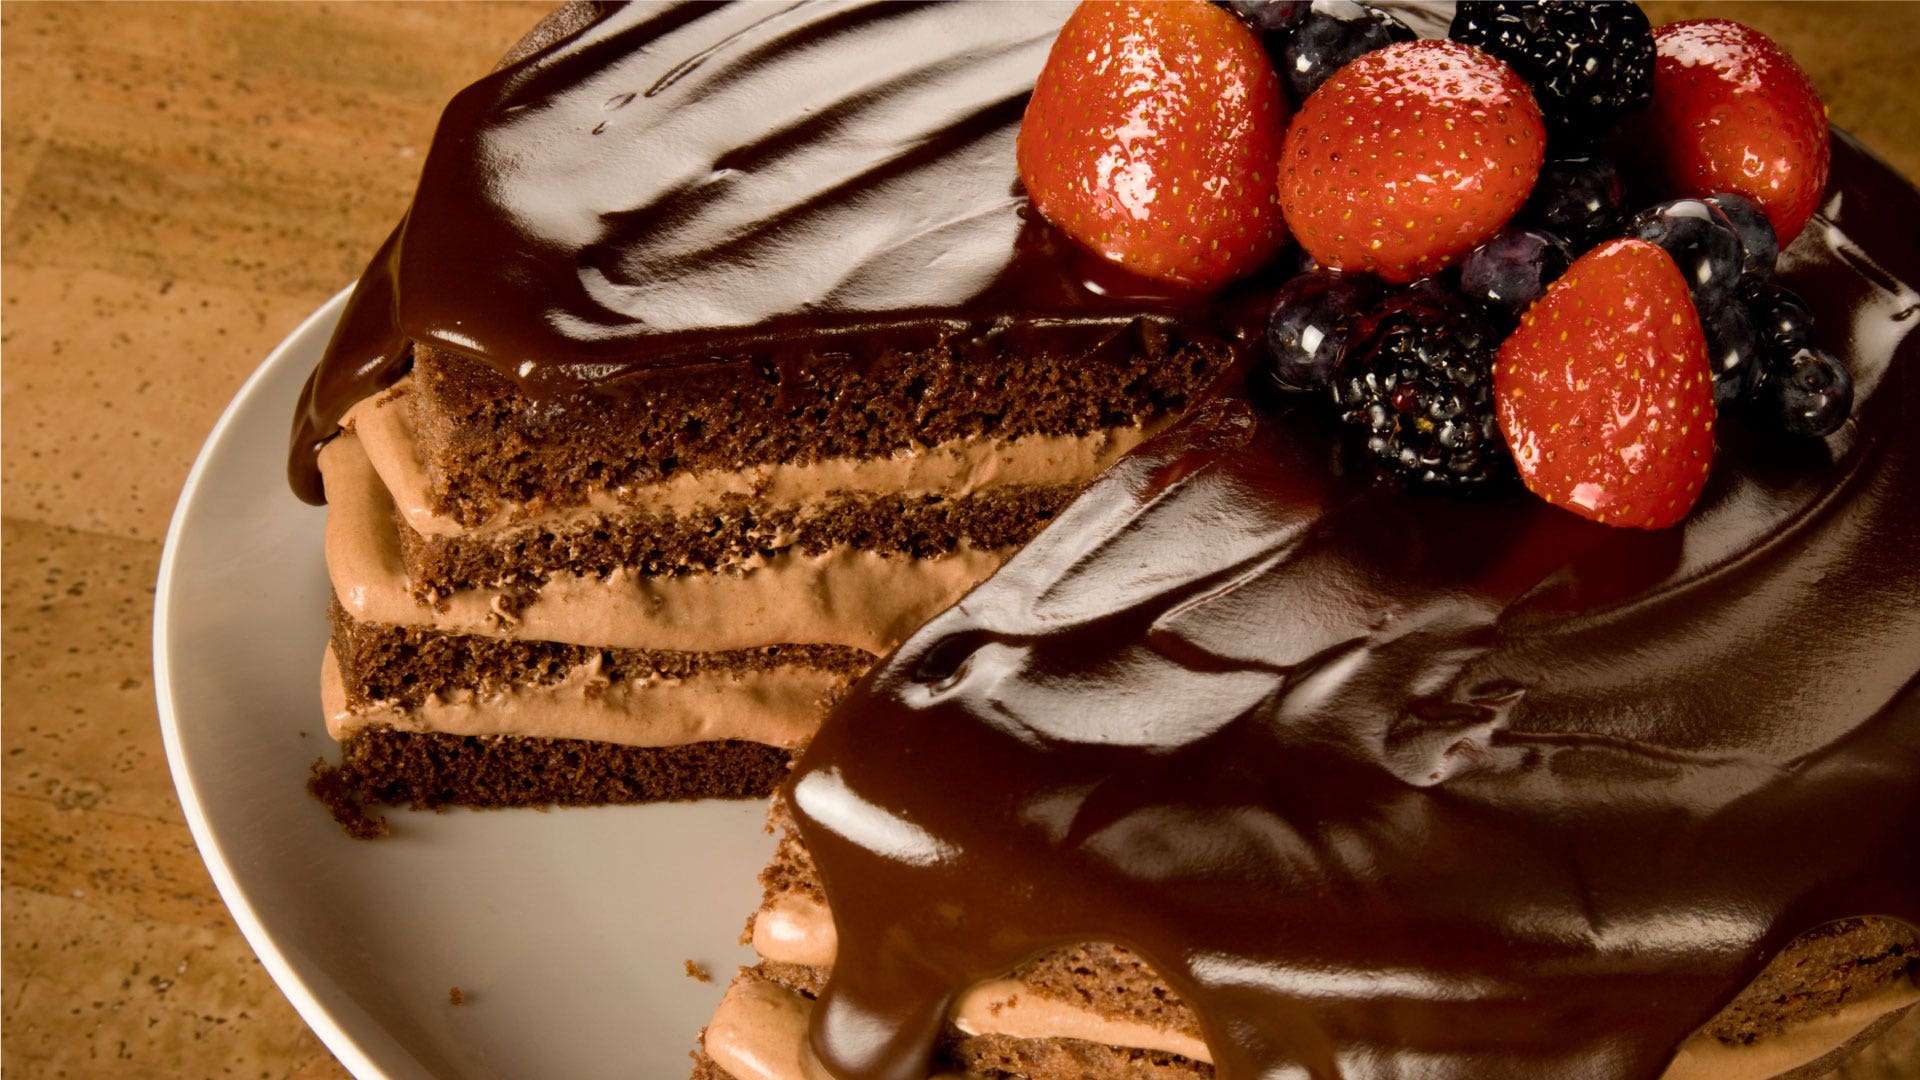 Triple Chocolate Torte Cake Recipe | Hersheyland